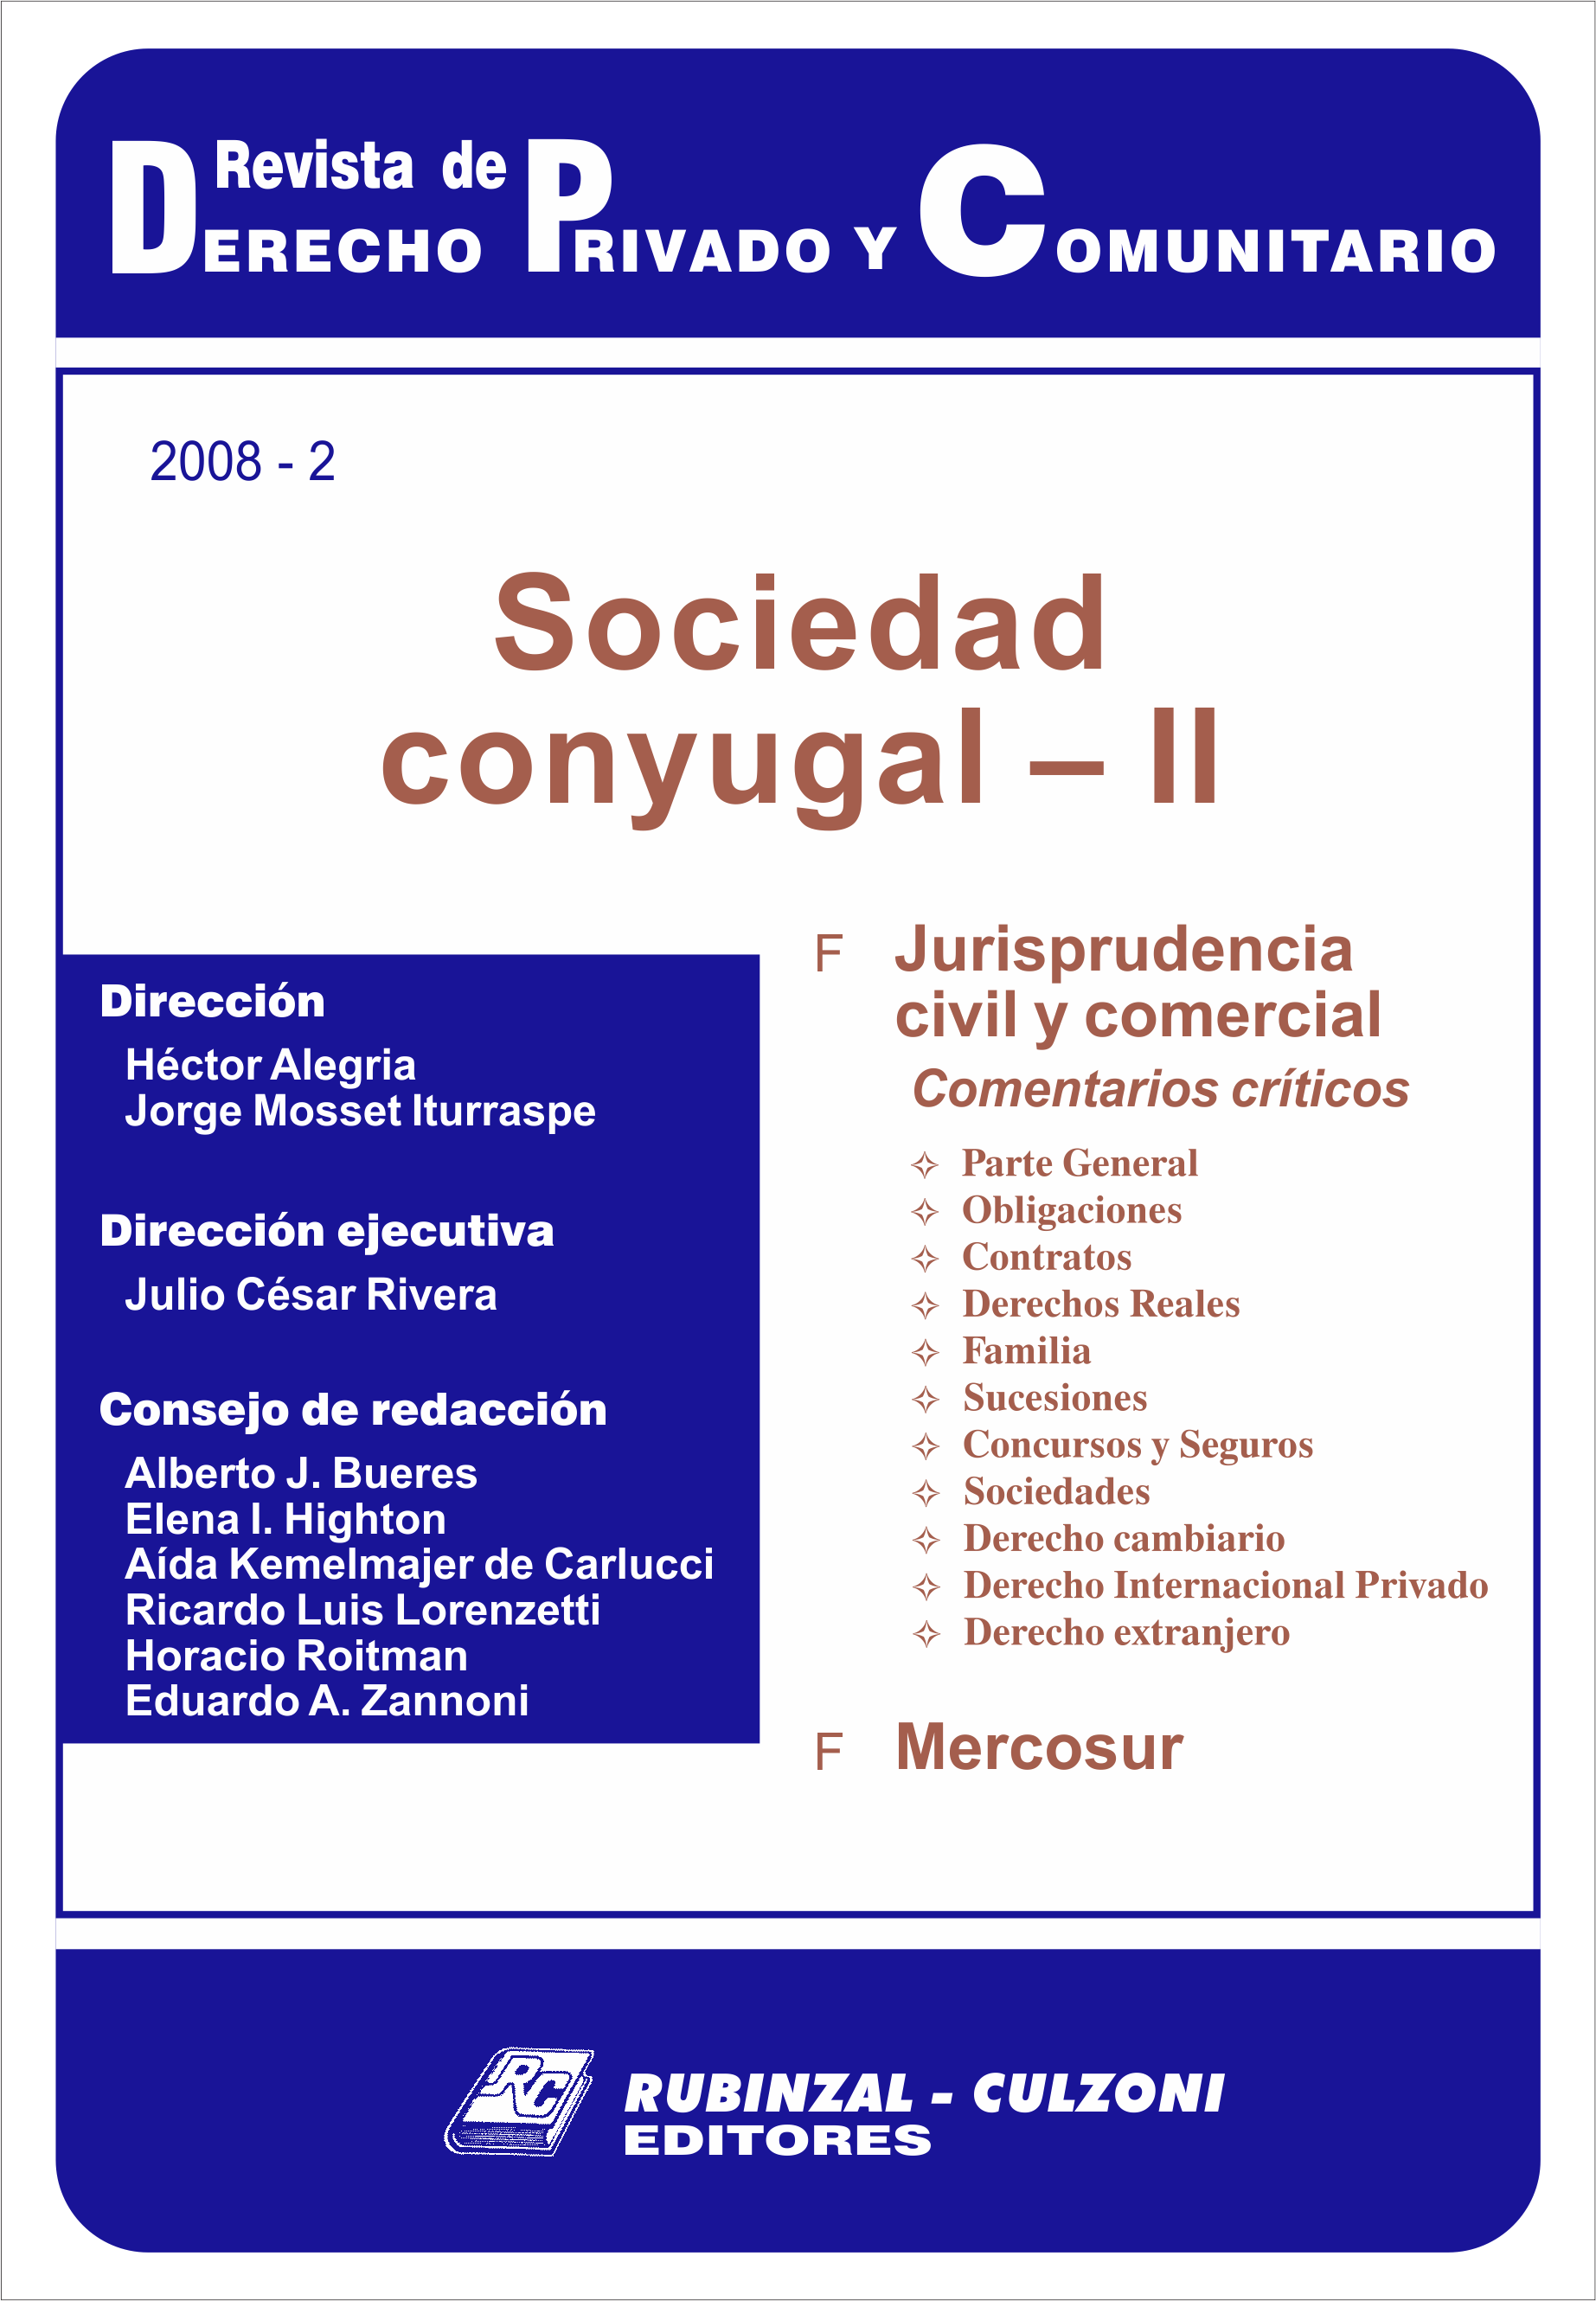 Revista de Derecho Privado y Comunitario - Sociedad conyugal - II